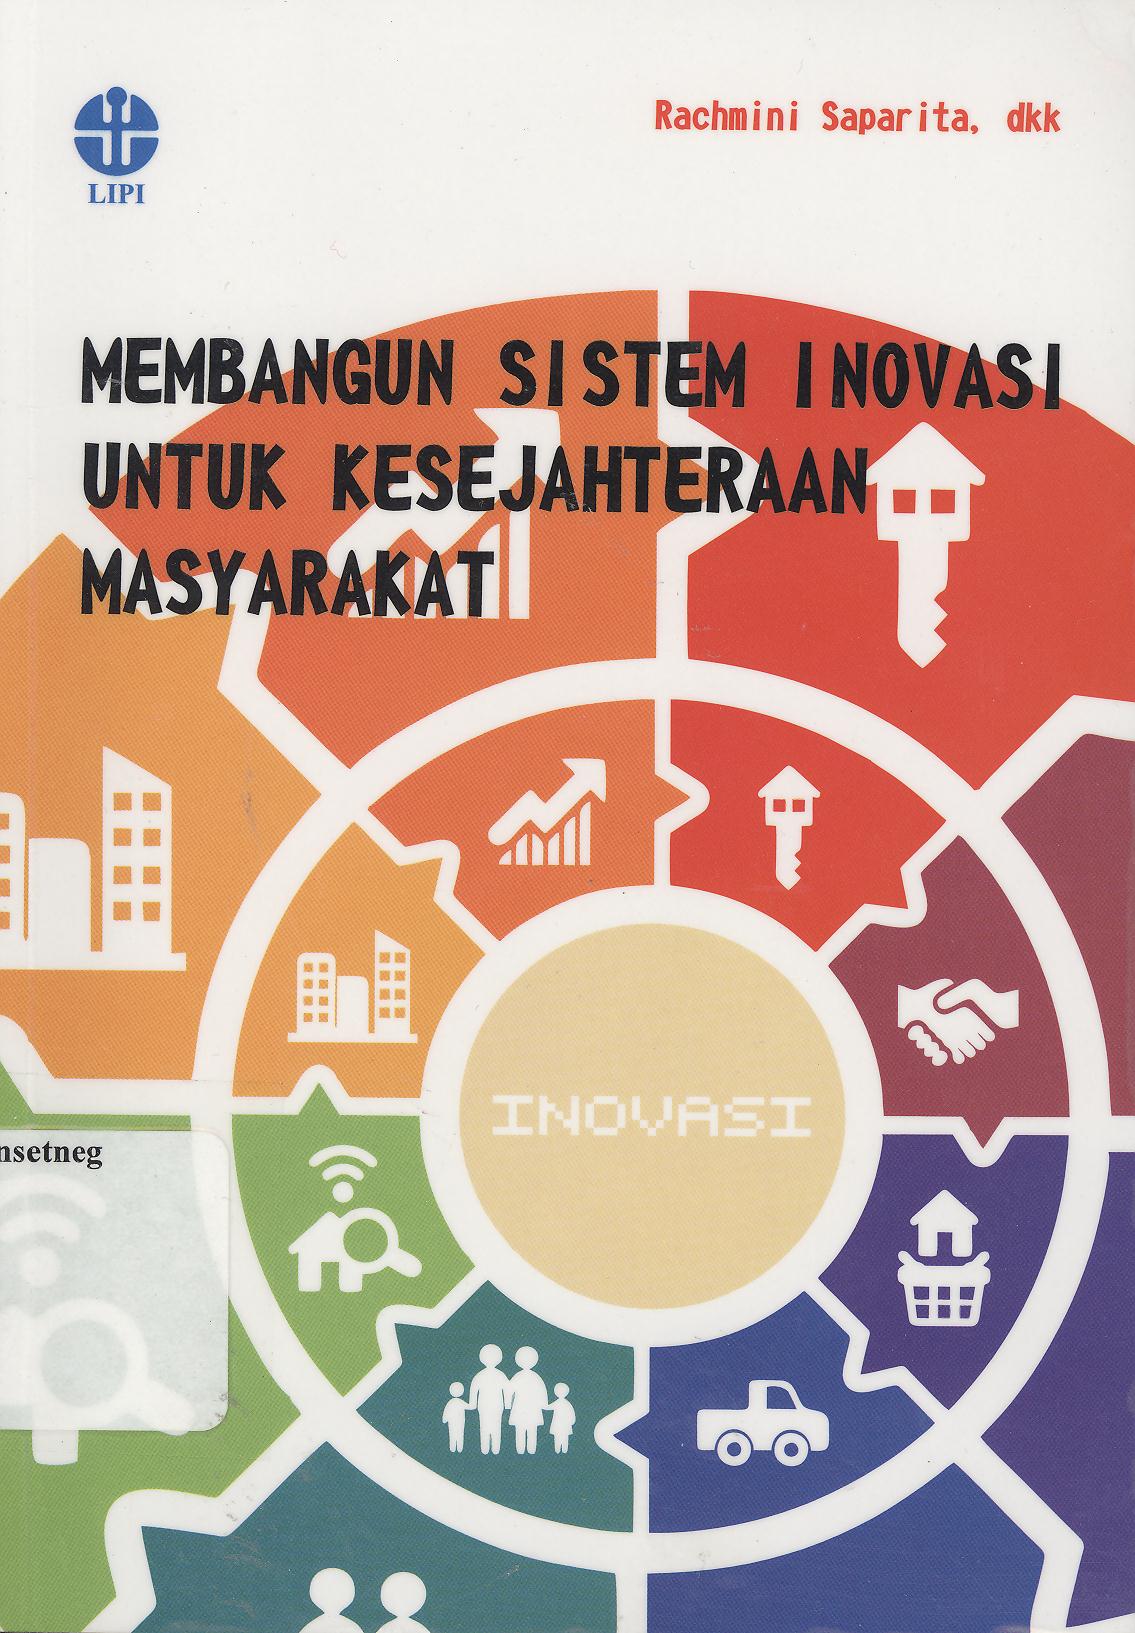 Membangun sistem inovasi untuk kesejahteraan masyarakat